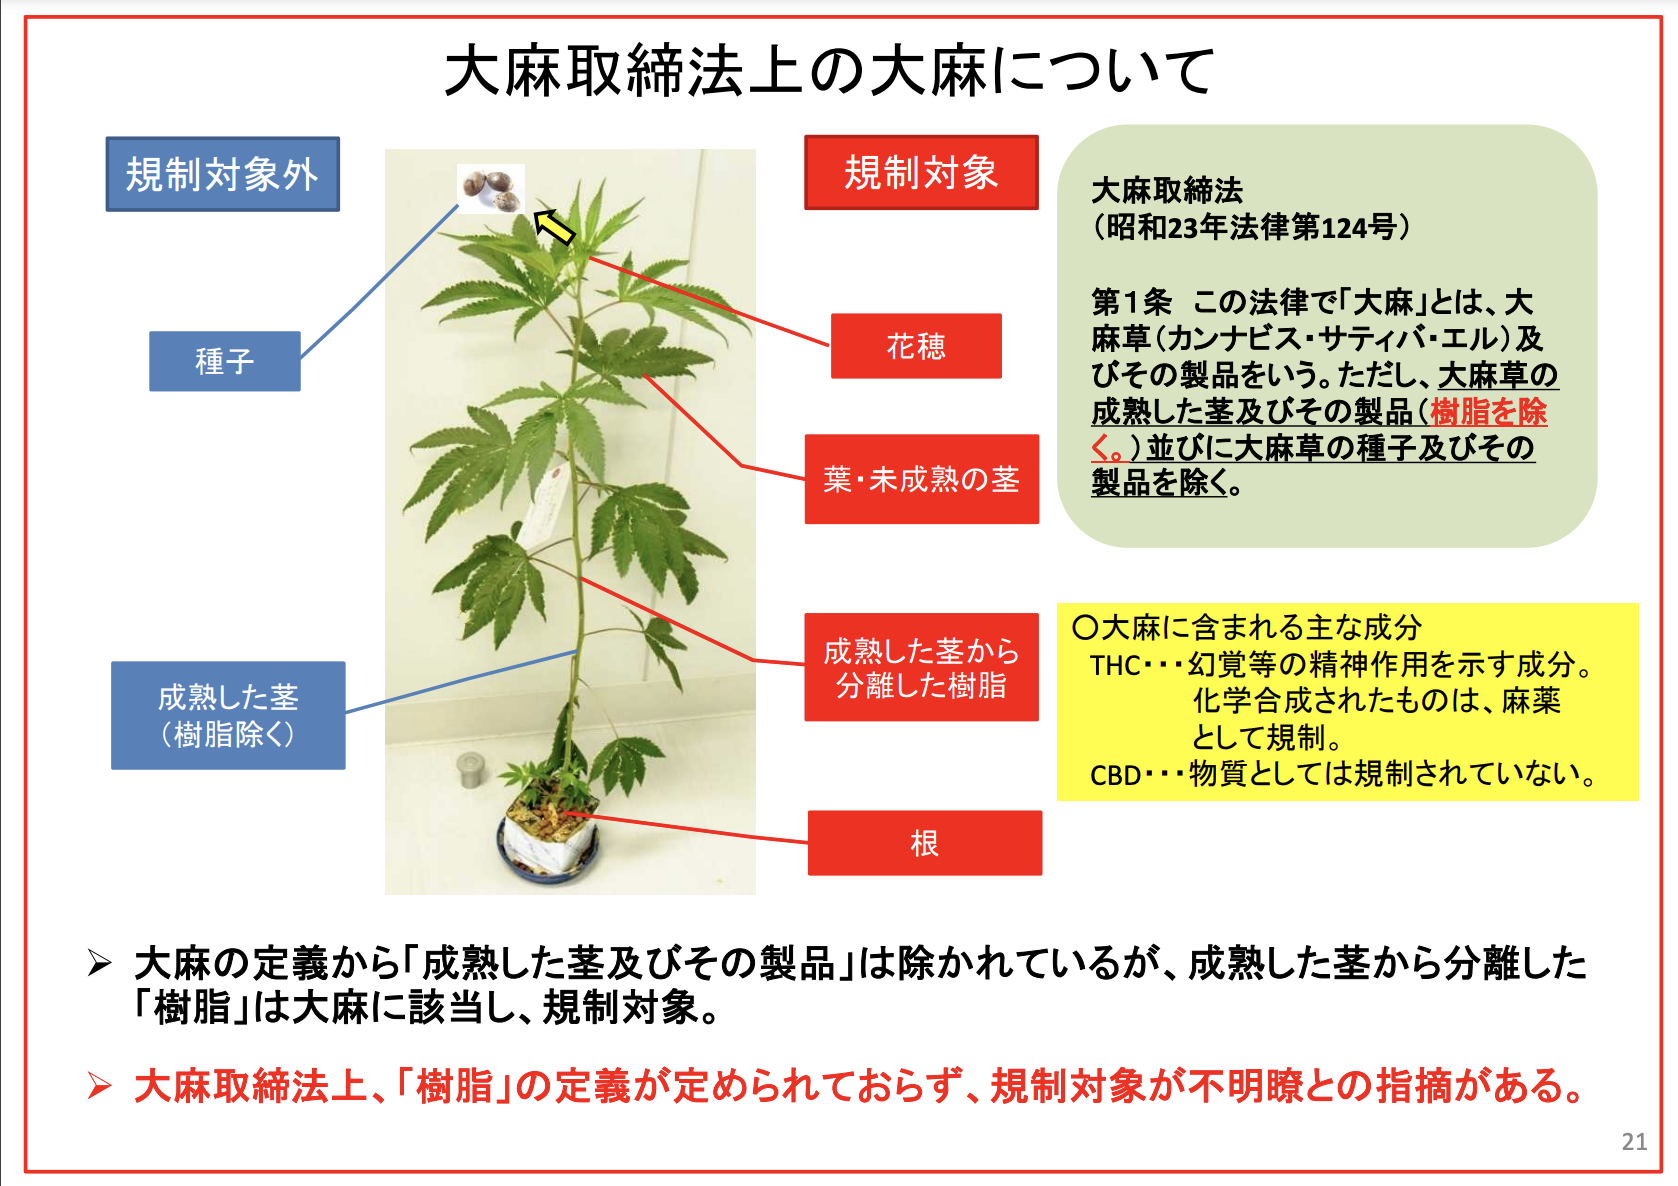 日本でも医療用大麻を適切に使えるようにして 海外で使える薬で日本の患者が救えない理由